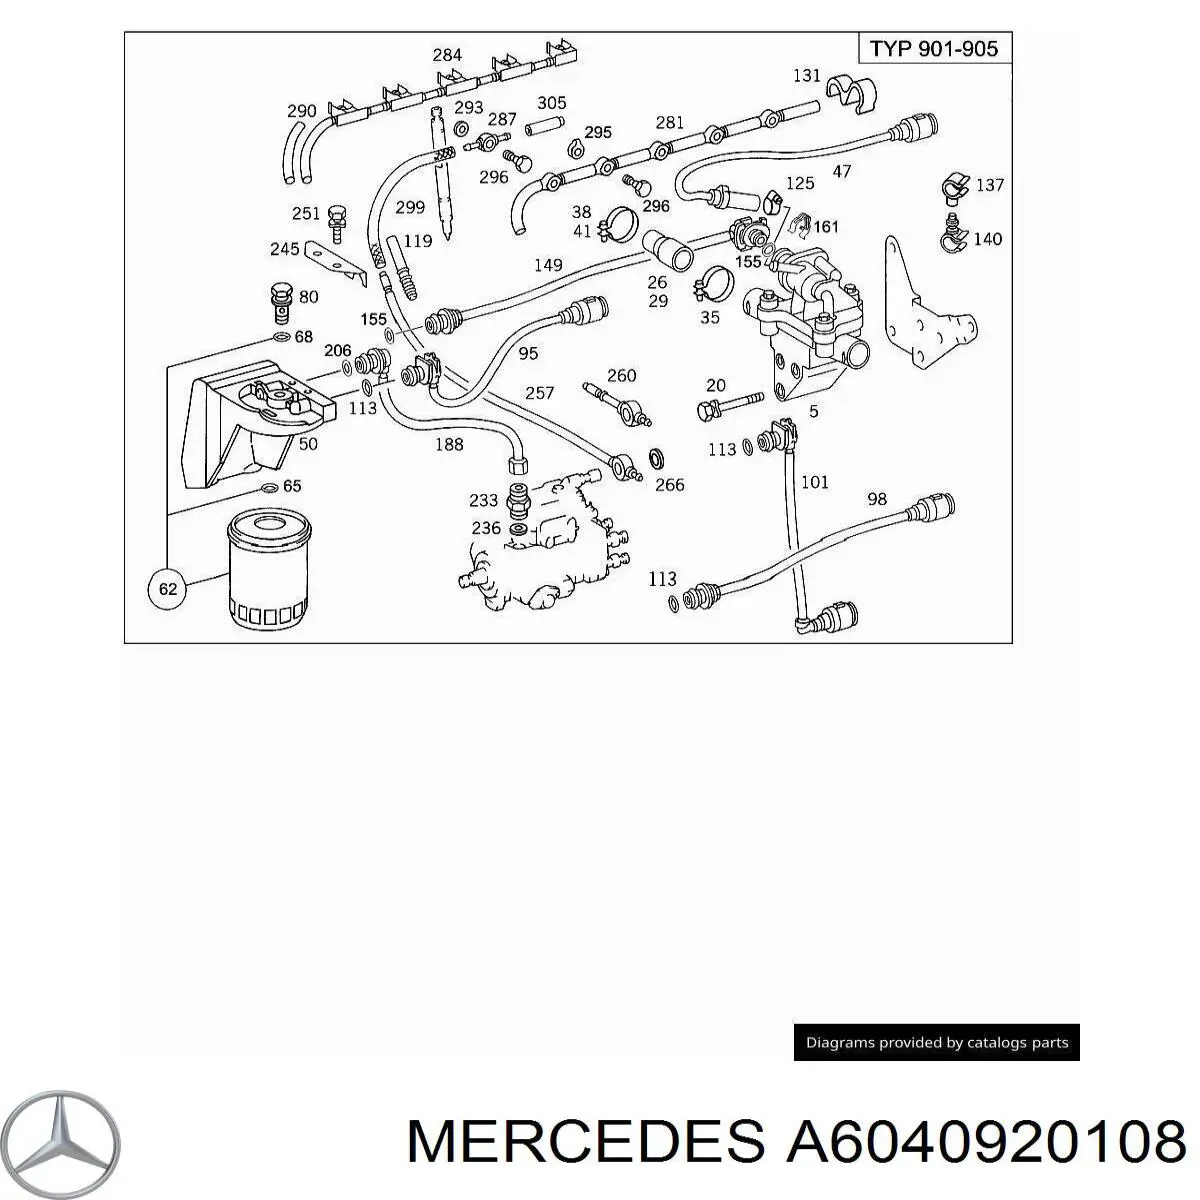 Корпус паливного фільтра на Mercedes C-Class (W202)